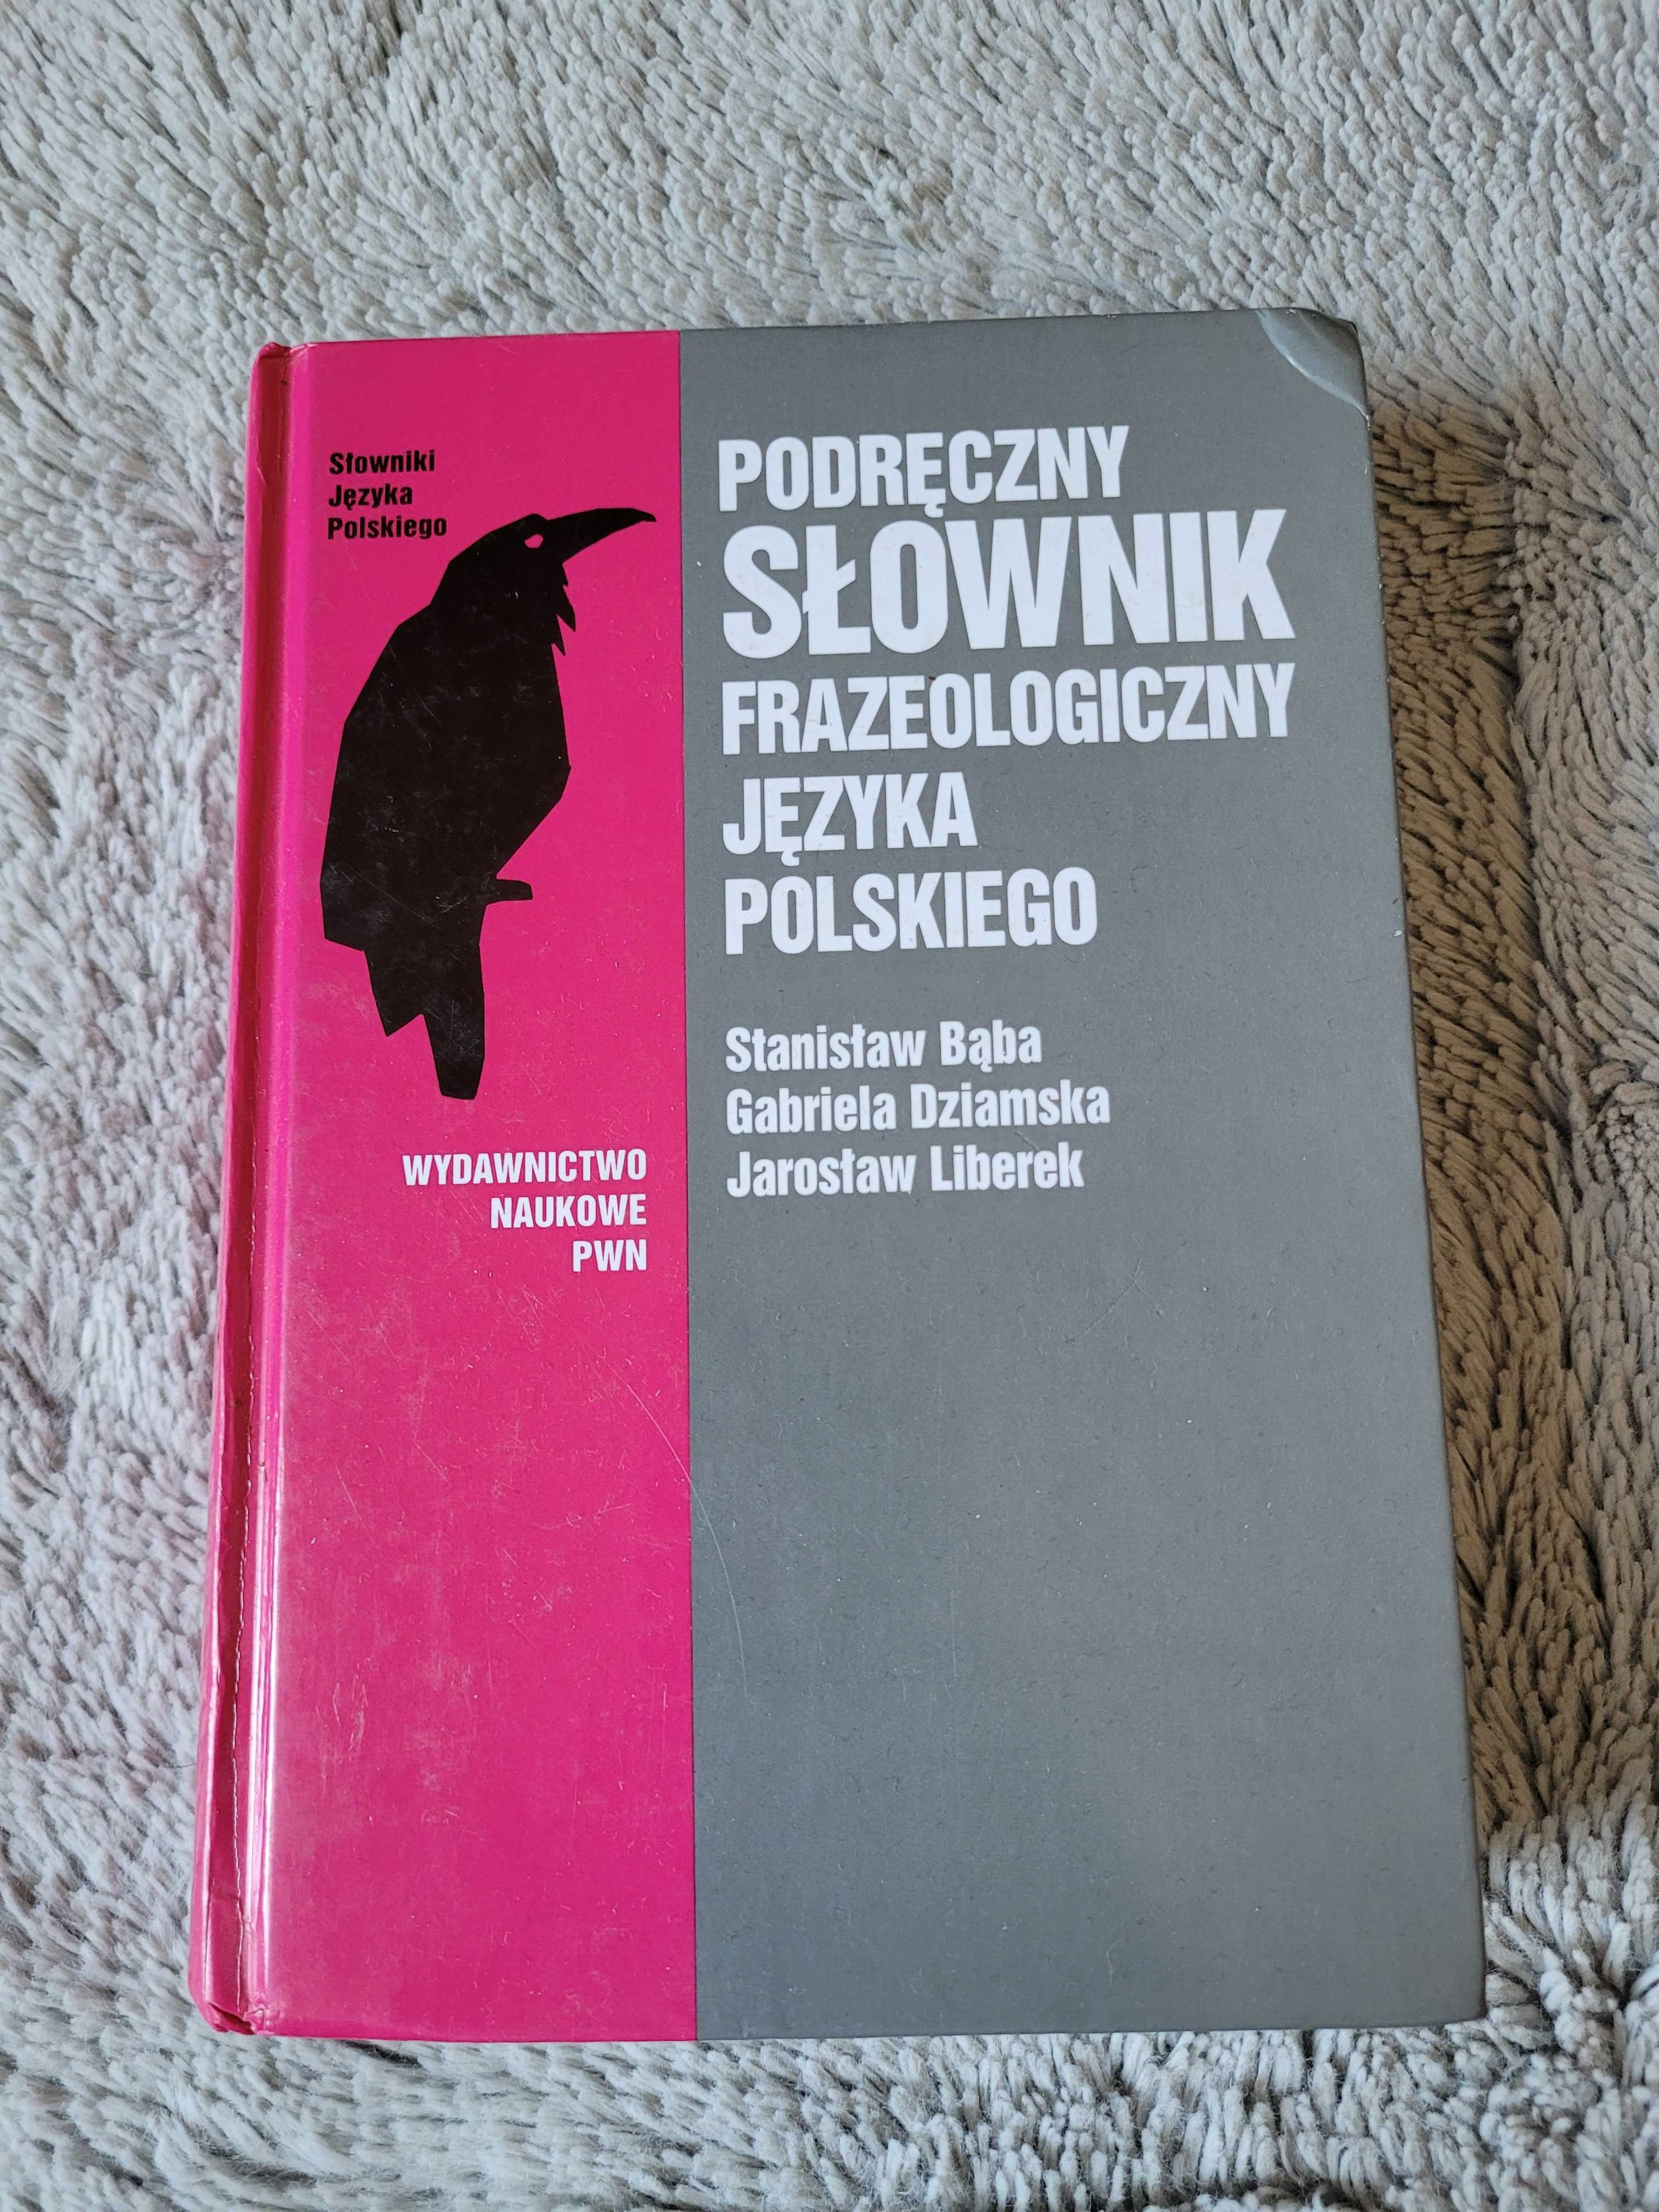 OKAZJA! Podręczny Słownik Frazeologiczny Języka Polskiego PWN